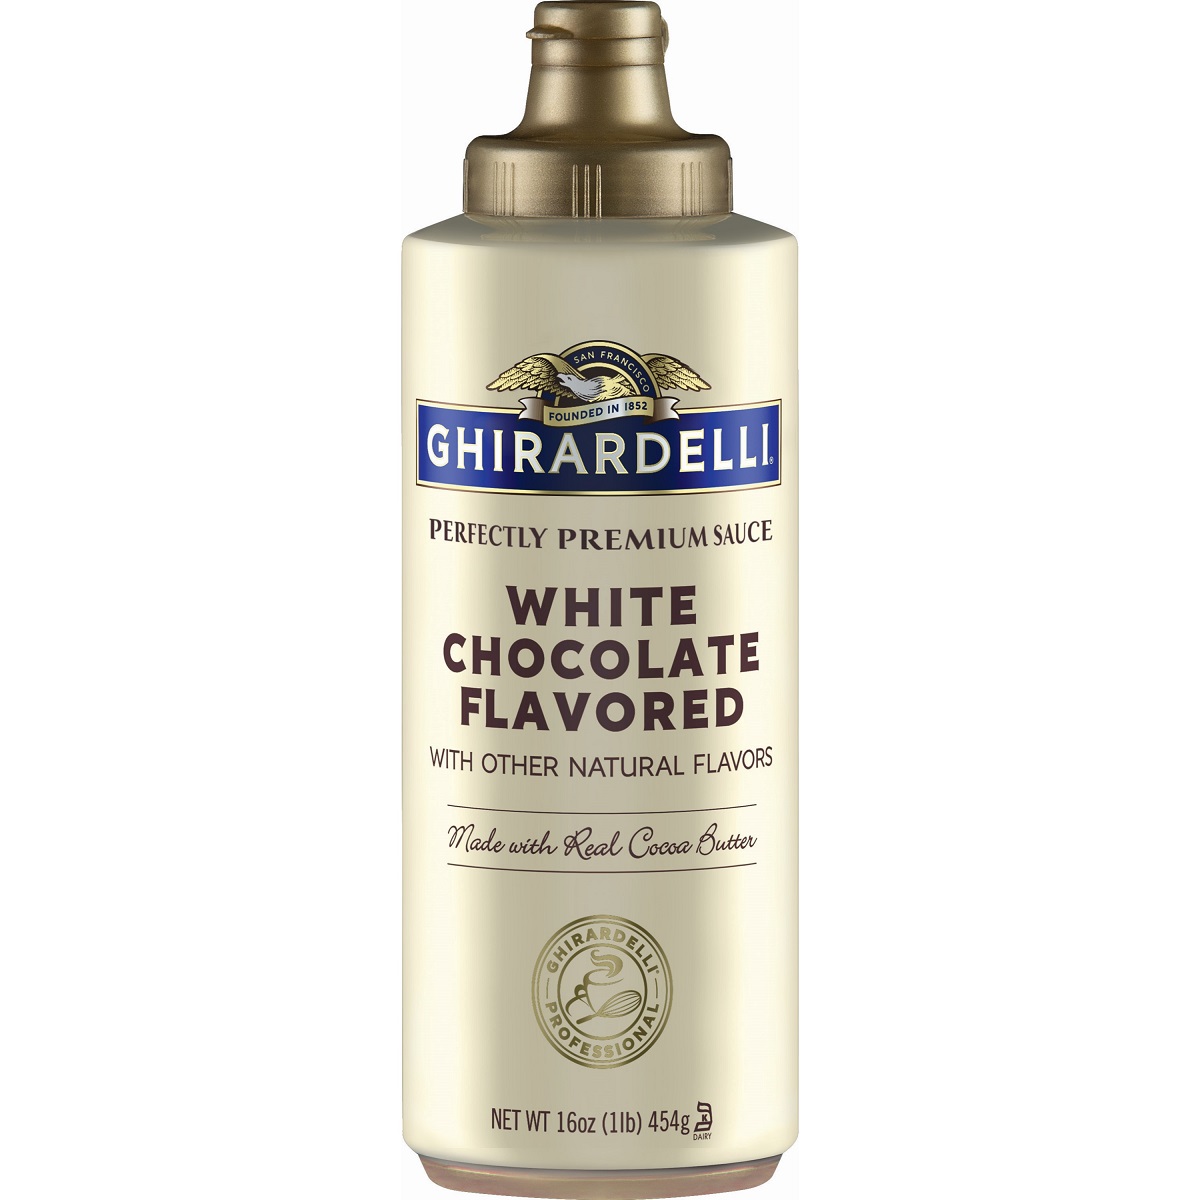 GHIRARDELLI SAUCE WHITE CHOCOLATE